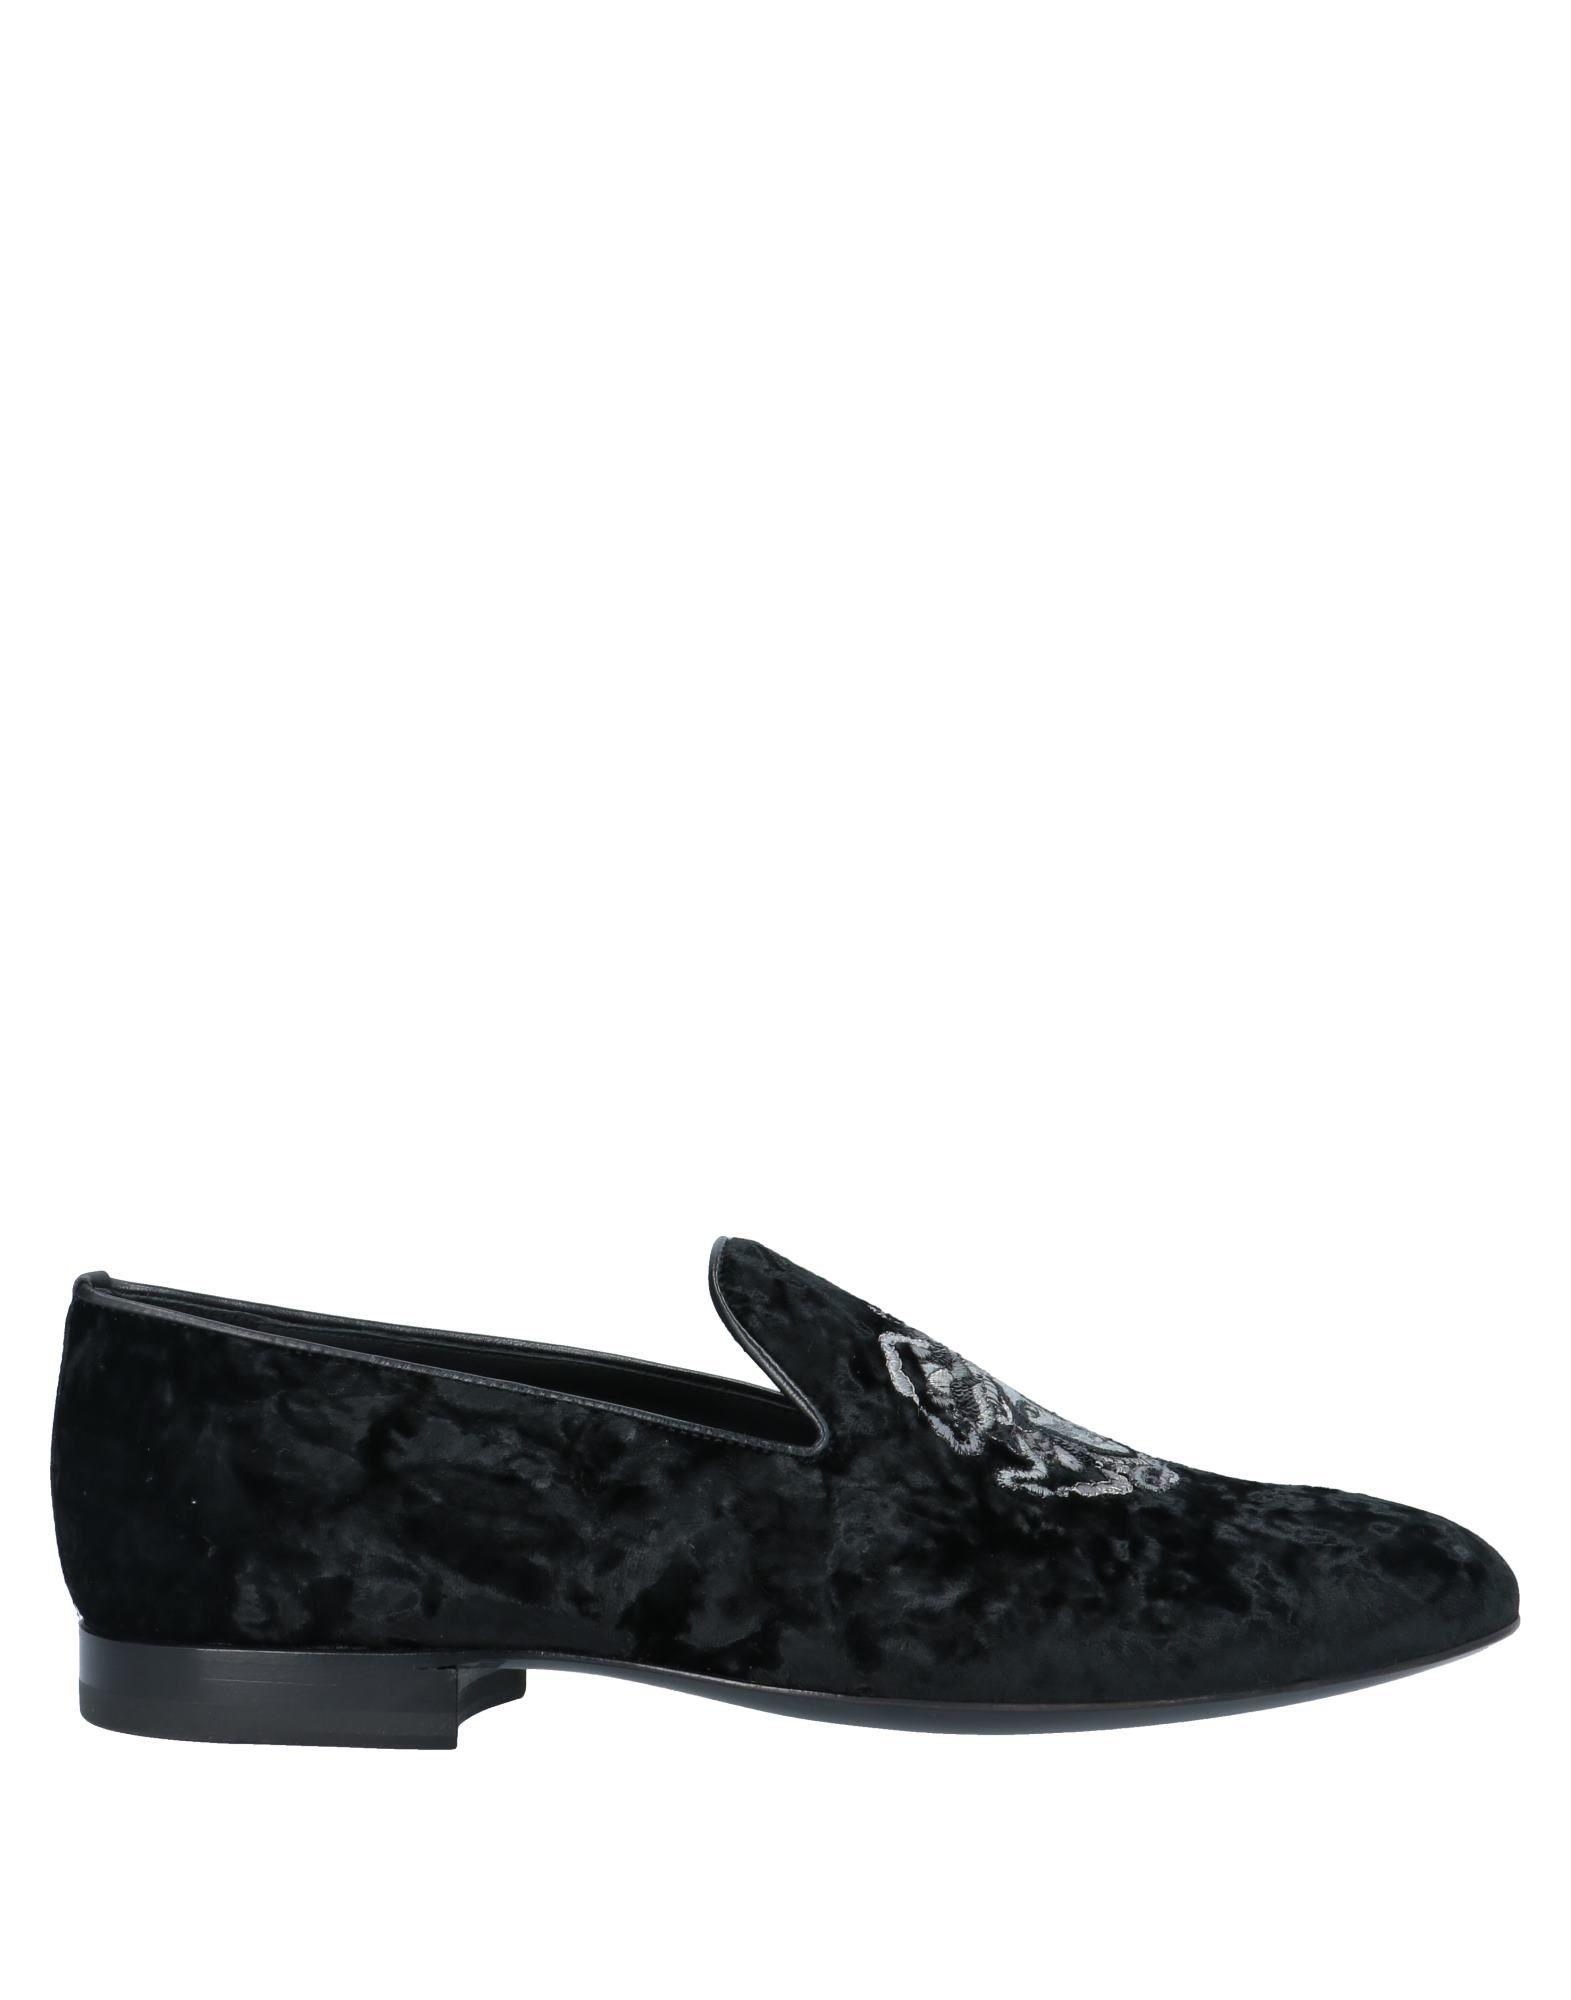 Versace Loafer in Black for Men - Lyst